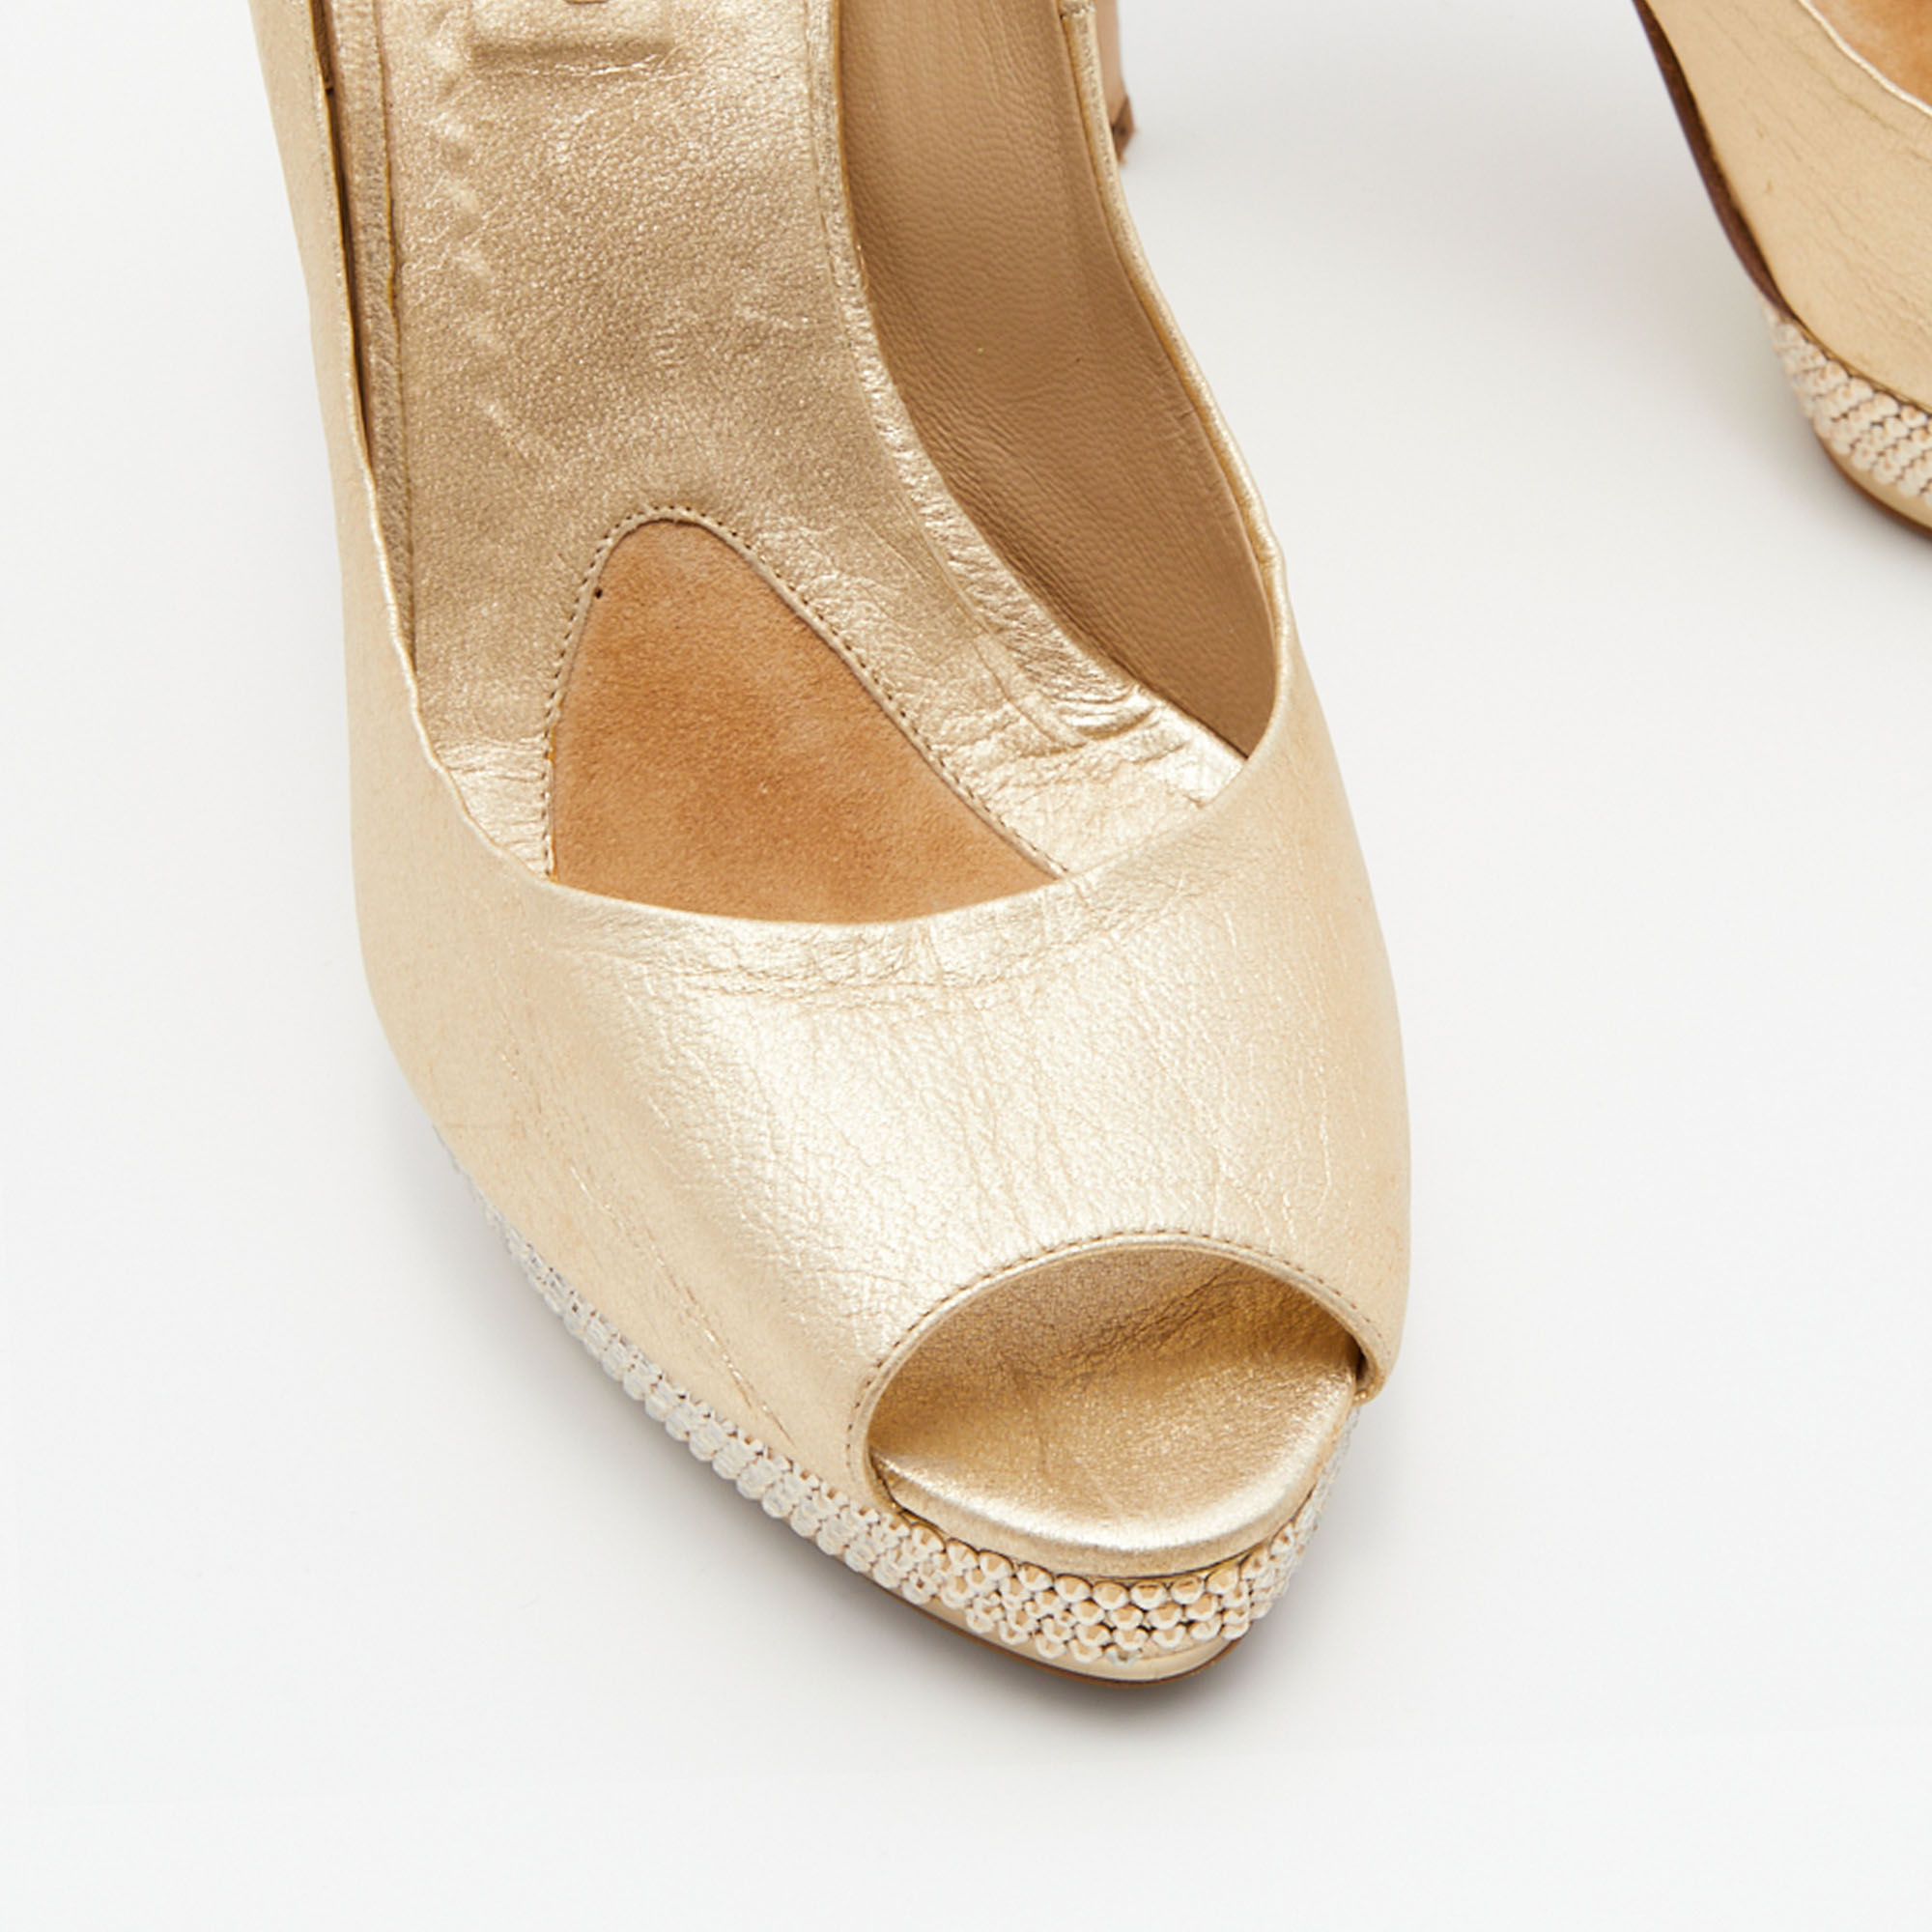 Le Silla Gold Leather Crystal Embellished Platform Peep Toe Pumps Size 38.5